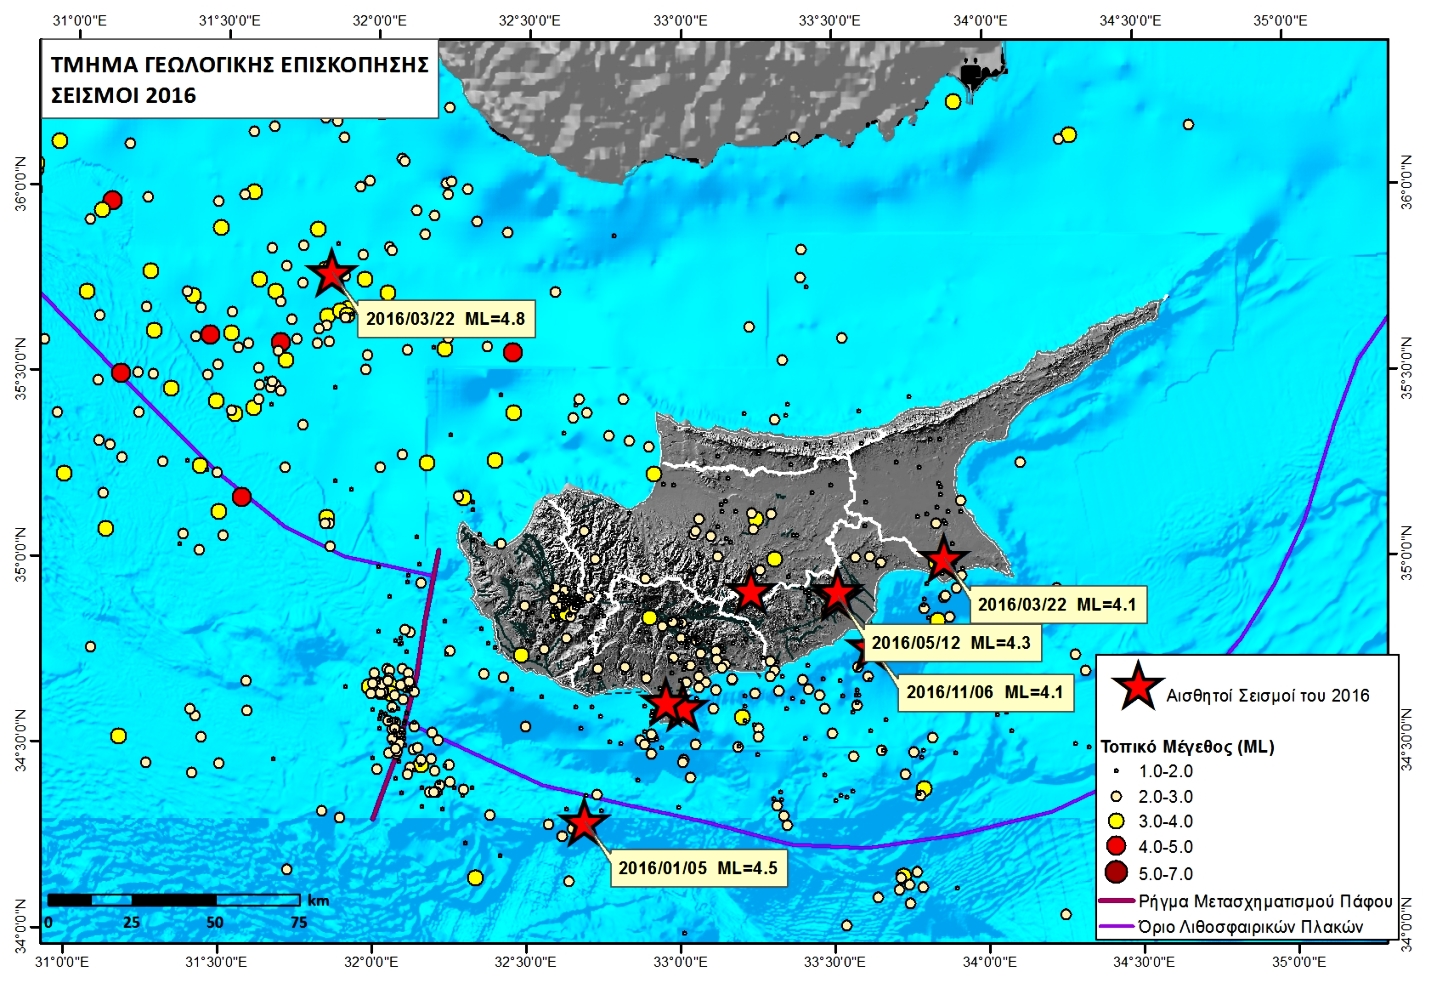 Χωρική κατανομή, ως προς το μέγεθος, των τοπικών σεισμών της Κύπρου που έχουν καταγραφεί από το Σεισμολογικό Κέντρο του Τμήματος Γεωλογικής Επισκόπησης κατά το έτος 2016